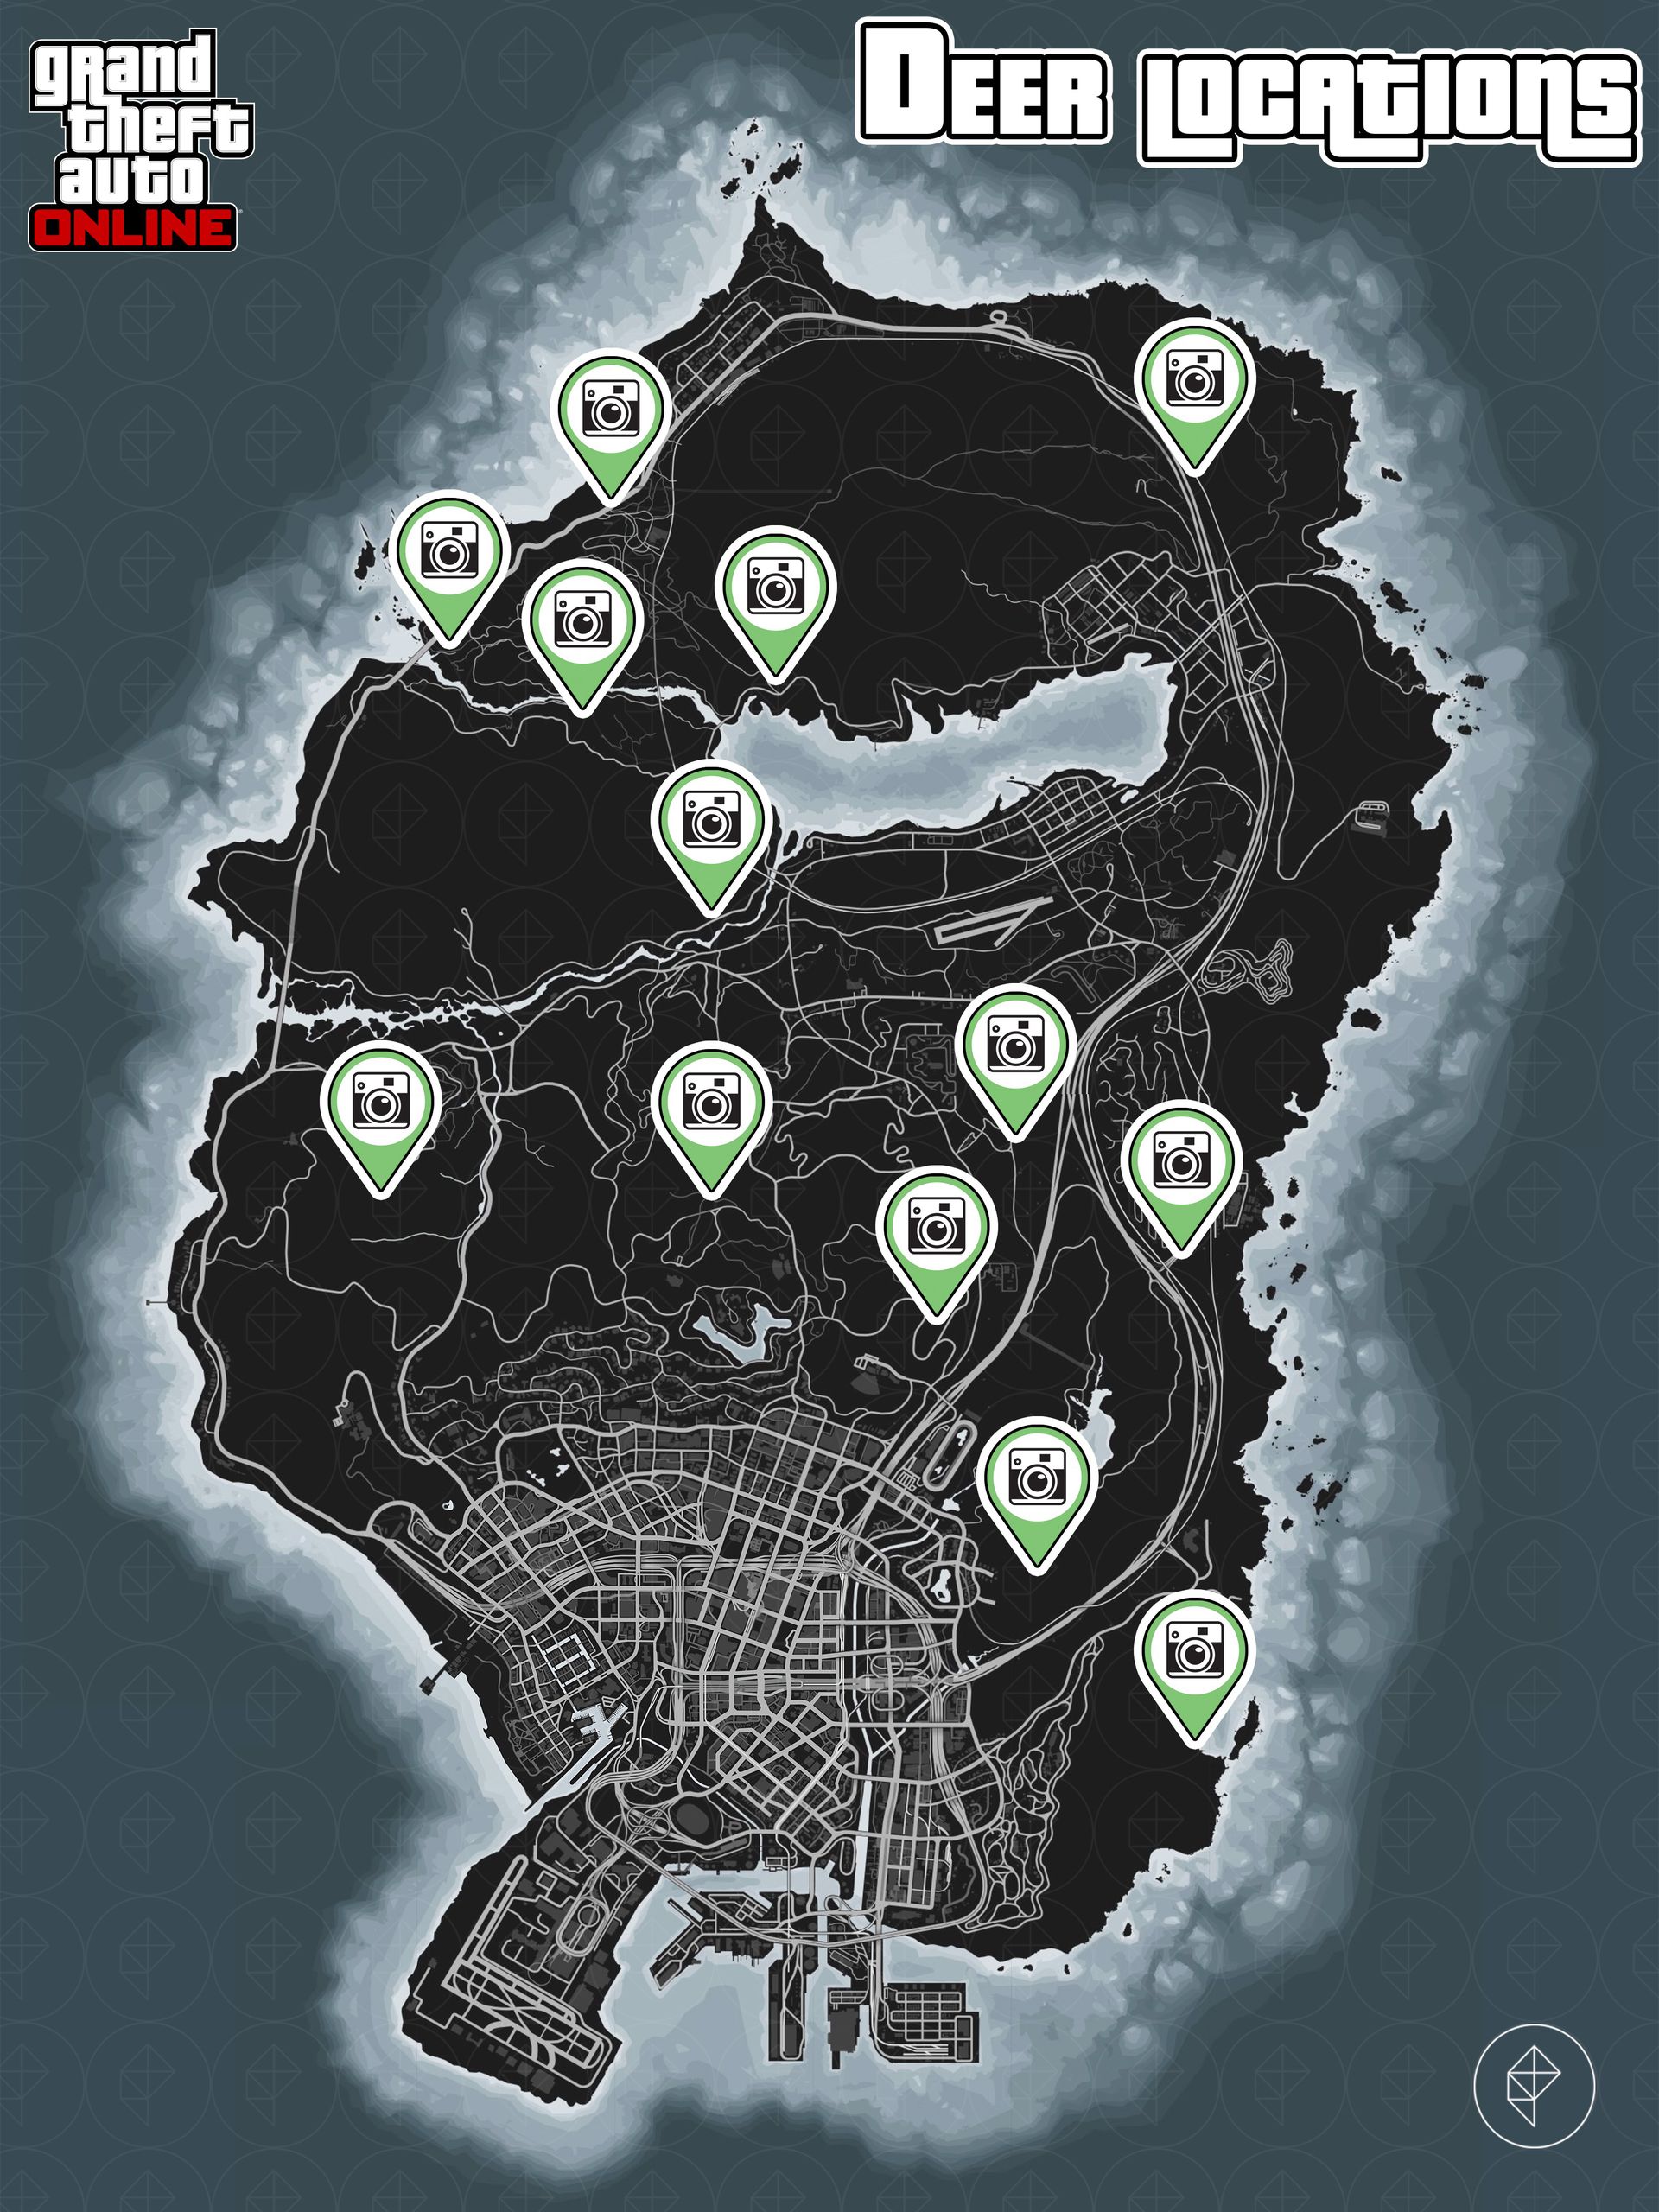 Carte de GTA Online montrant les emplacements des cerfs